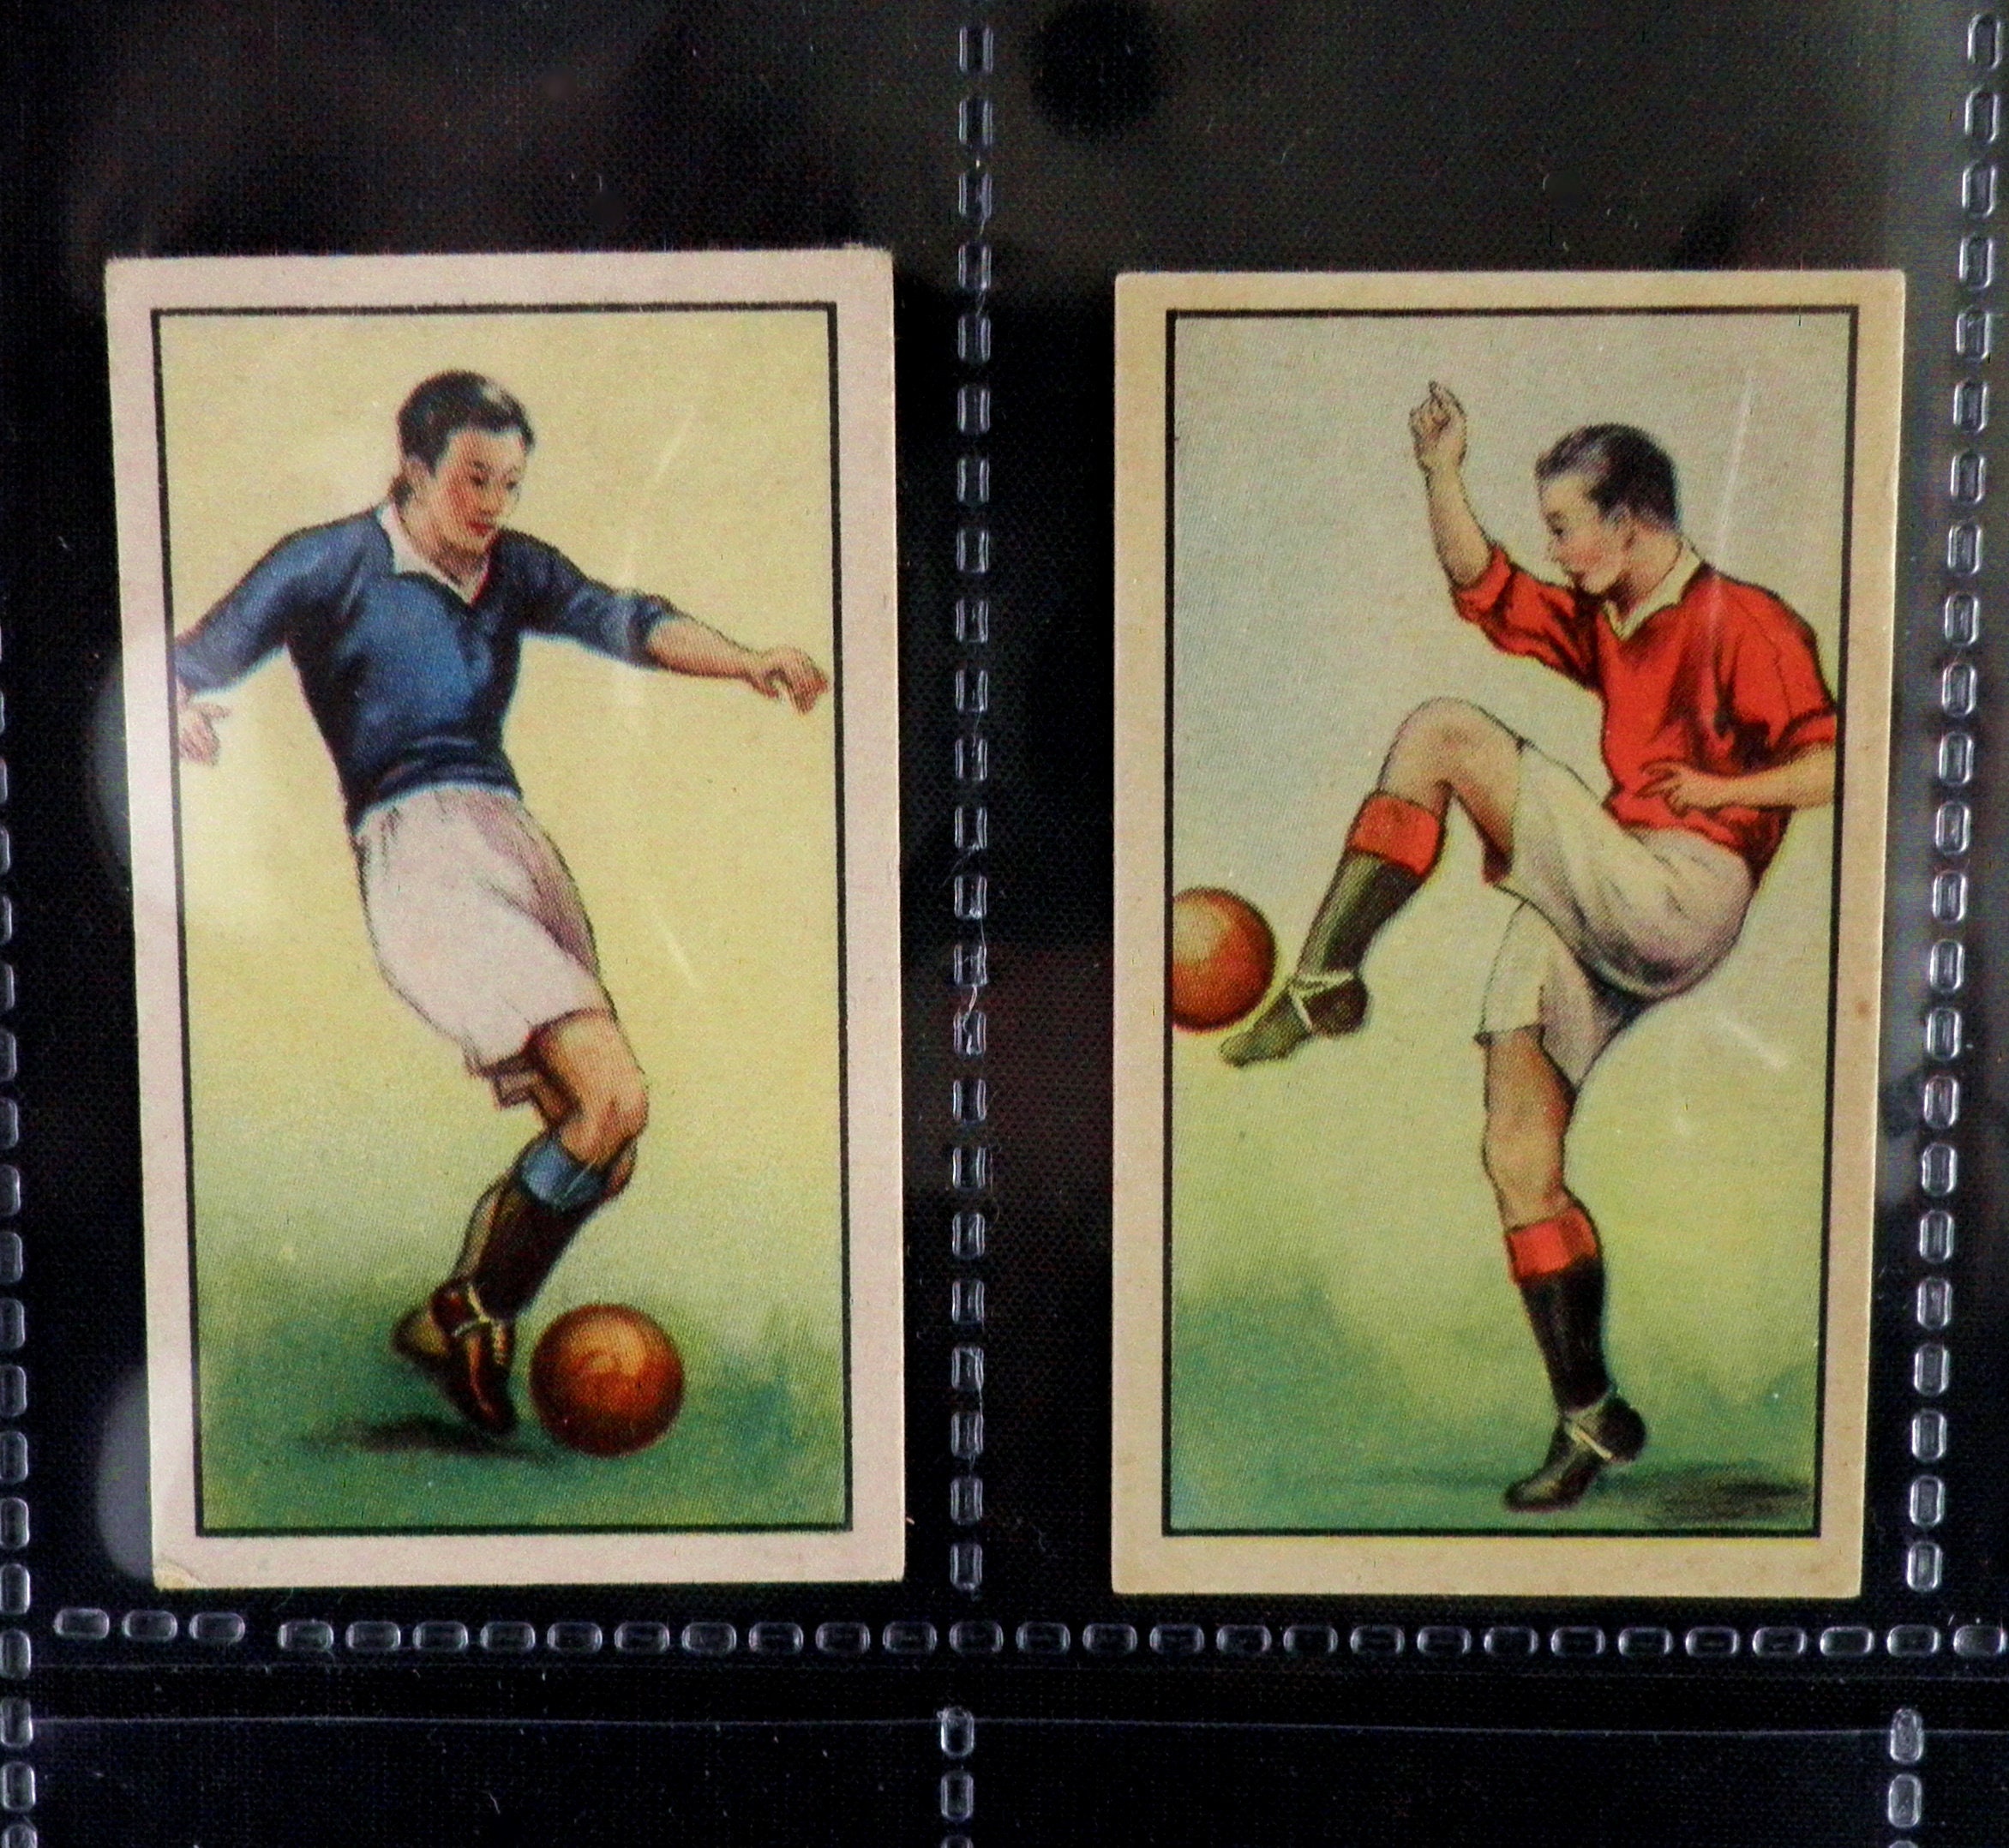 FOOTBALL/SOCCER CARDS